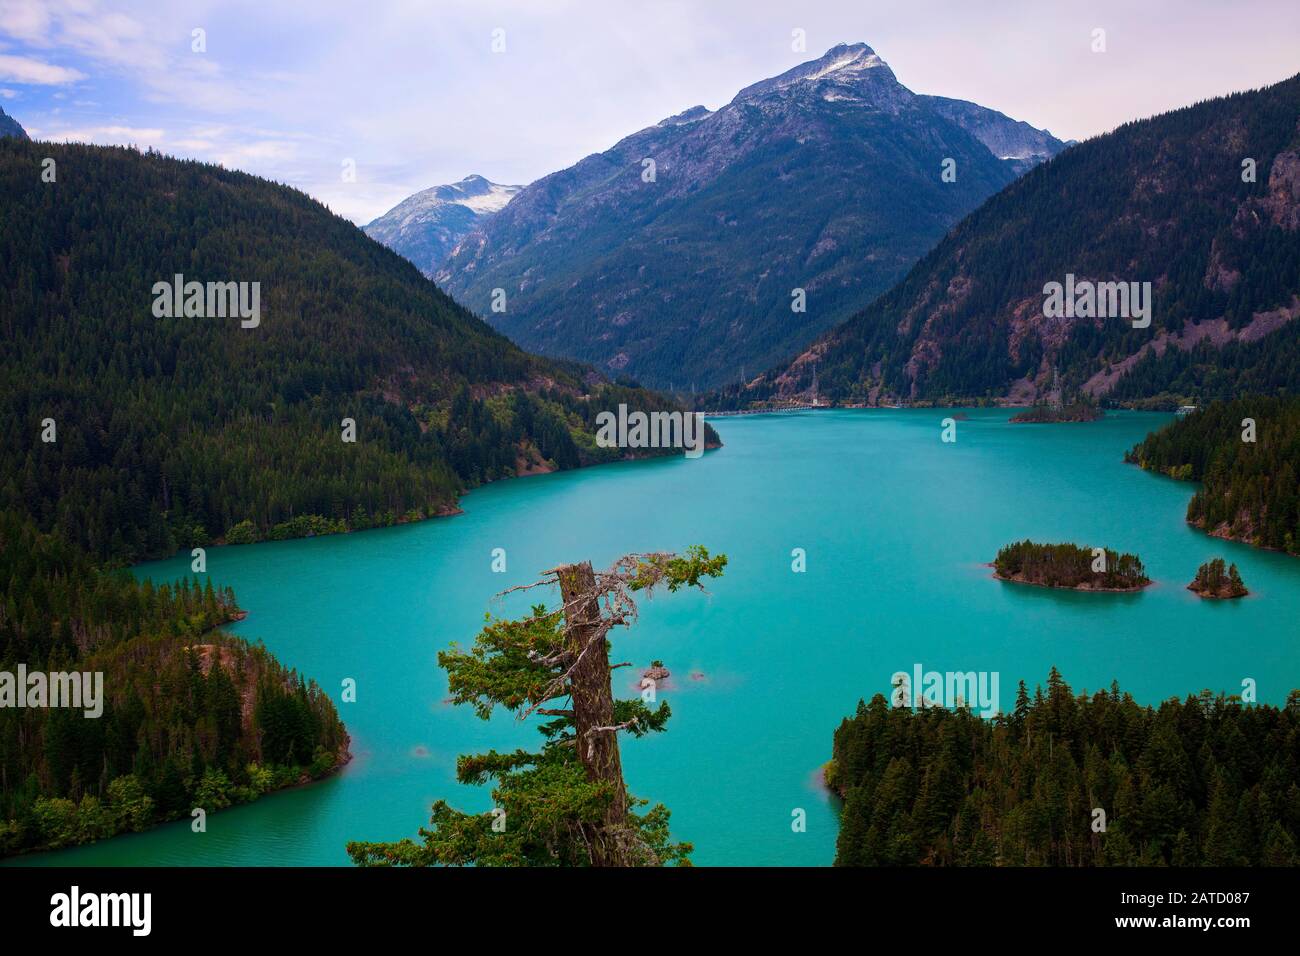 Diablo Lake, un réservoir dans les montagnes de North Cascade de l'État de Washington. La belle couleur turquoise du lac est causée par le limon glacial. Banque D'Images